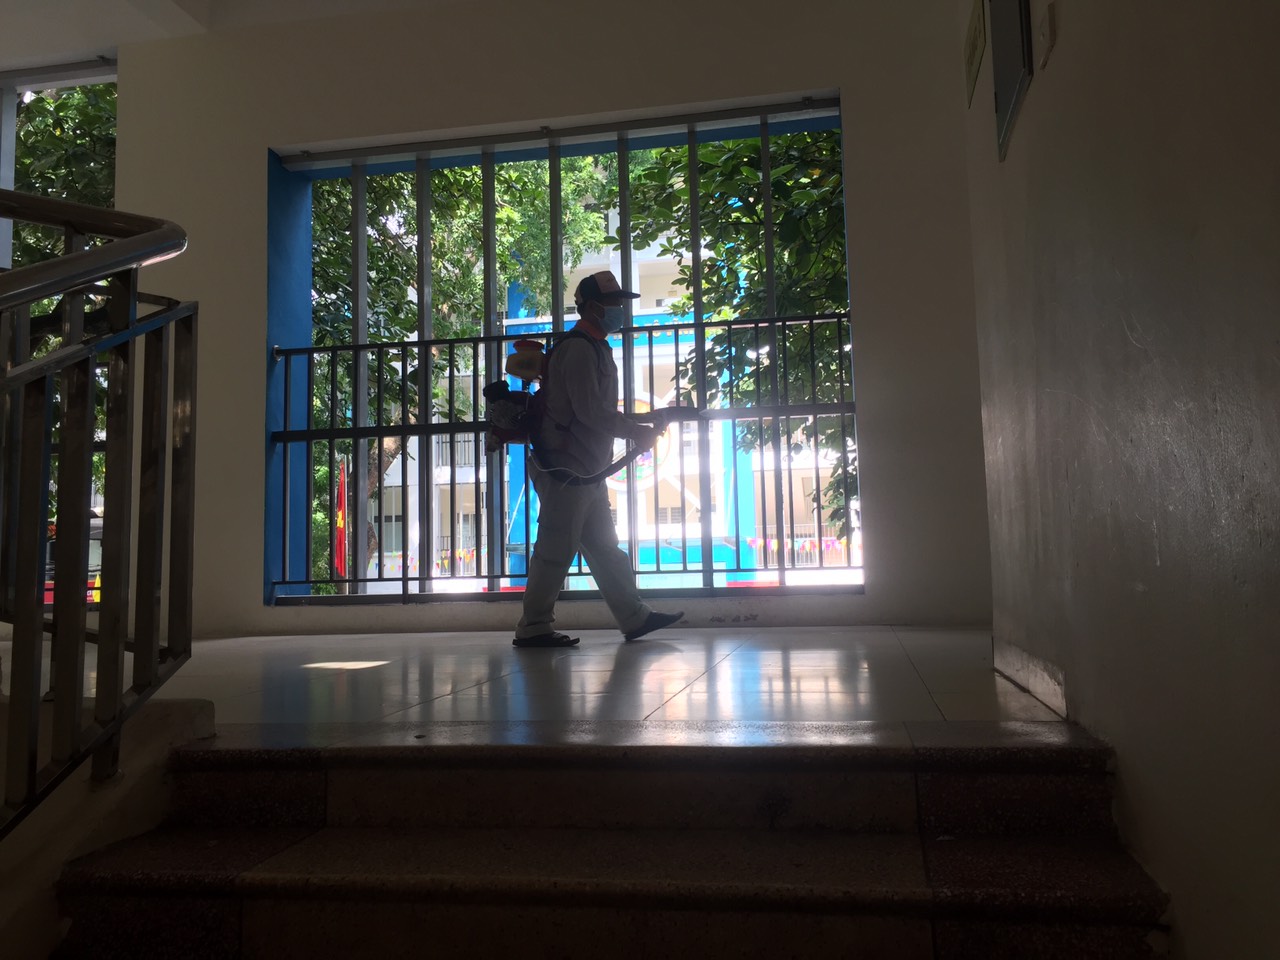 Trường Tiểu học Tô Vĩnh Diện phun thuốc muỗi tại các phòng học, khuôn viên nhà trường để phòng chống dịch bệnh truyền nhiễm  ￼ ￼￼￼￼